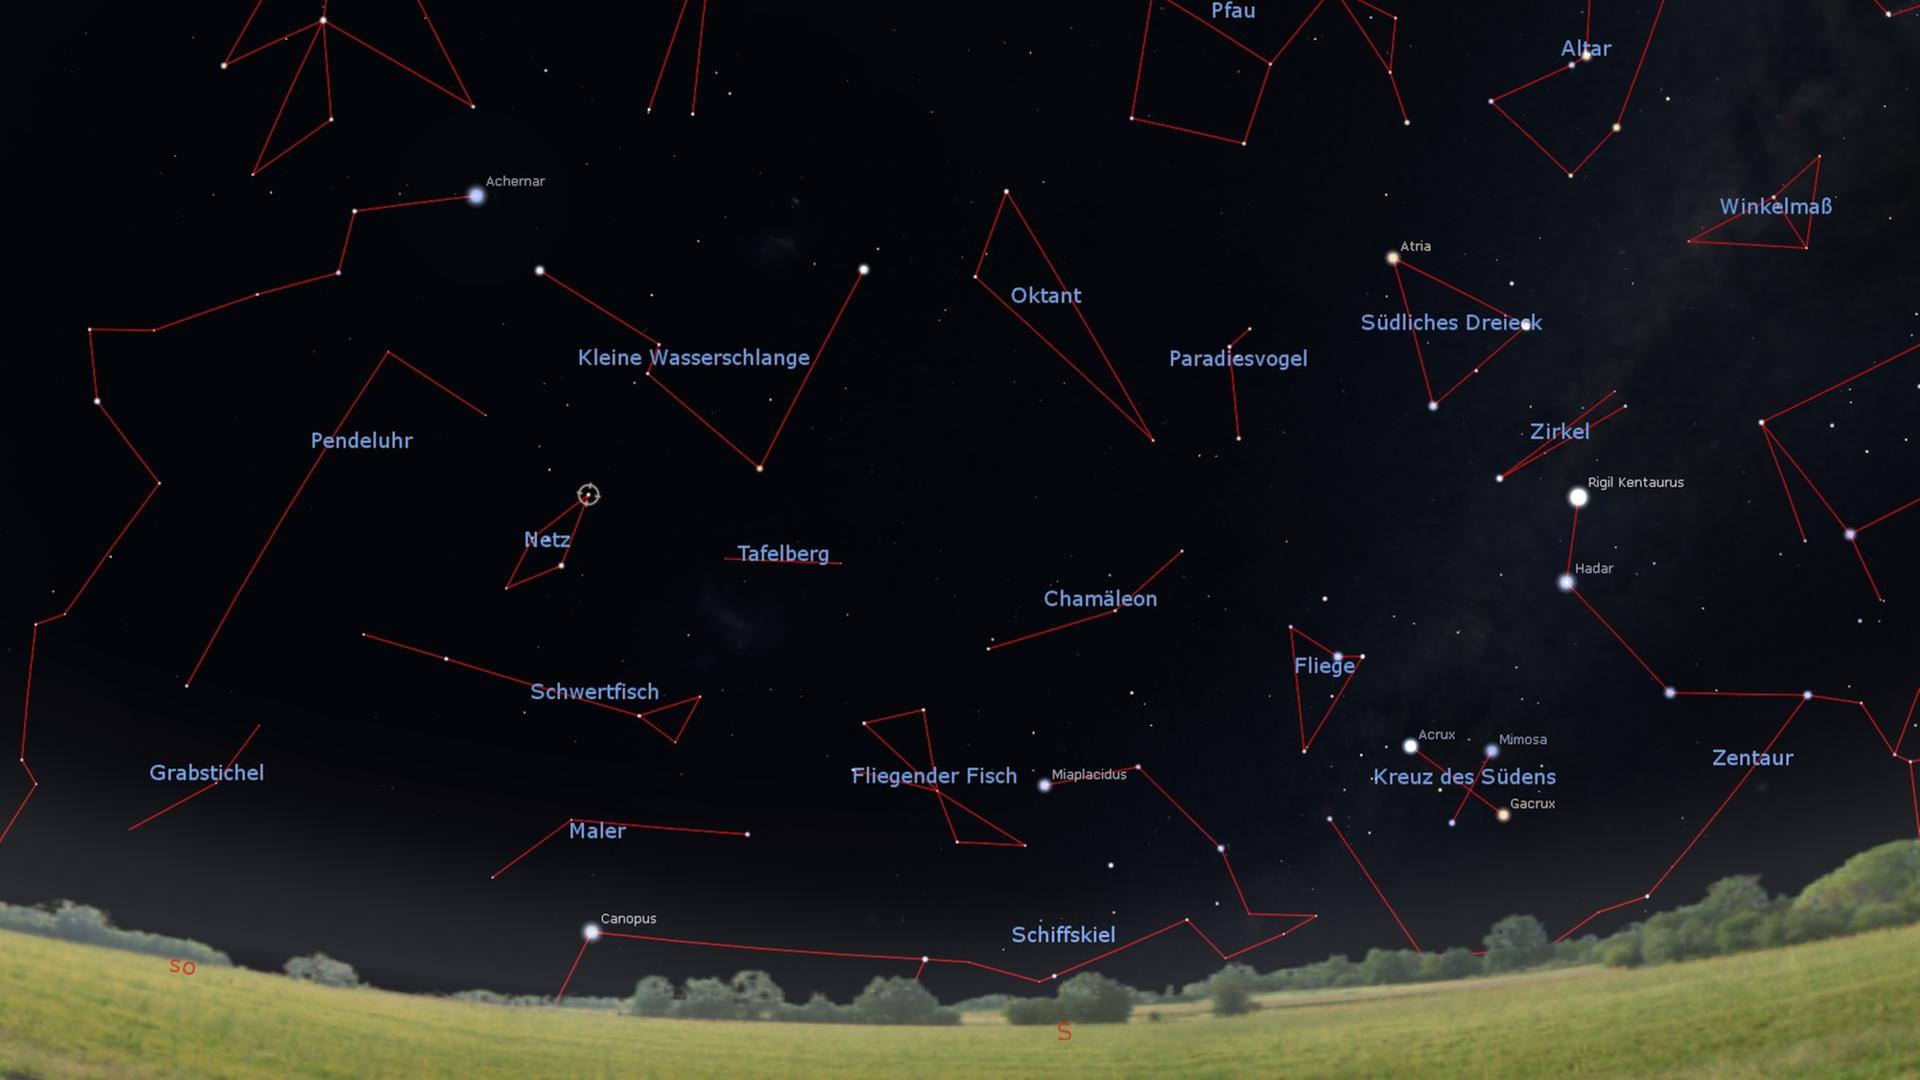 Das Sternbild Netz befindet sich zwischen den hellen Sternen Achernar und Canopus, ein Stück links des berühmten Kreuz des Südens.